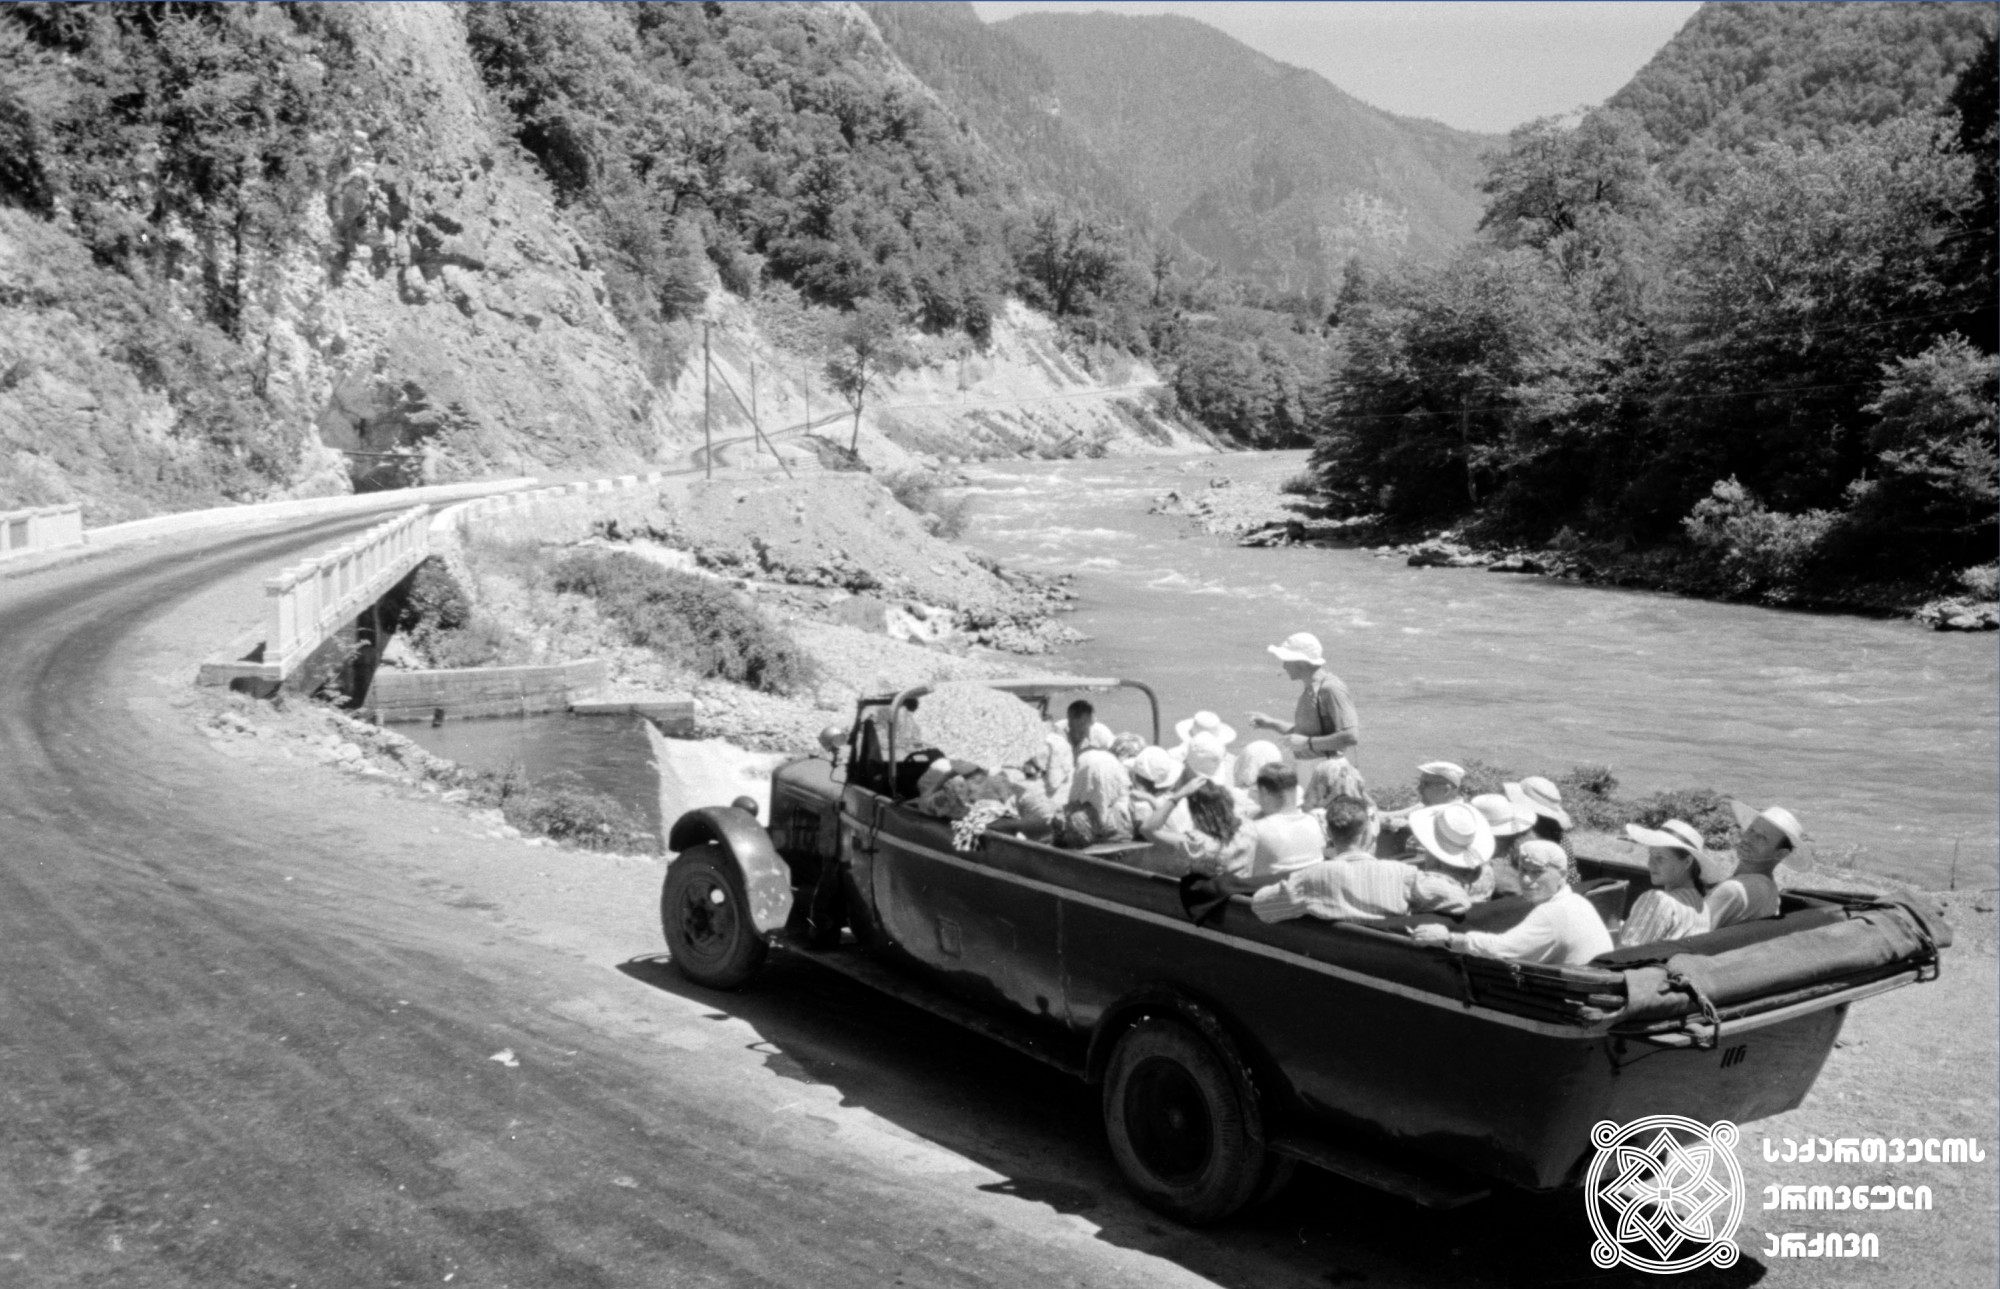 მდინარე ბზიფის ხეობა, გზა რიწის ტბისკენ. აფხაზეთი, 1950-იანი წლები. <br>
Valley of Bzipi River, road to Lake Ritsa. Apkhazeti, 1950s.